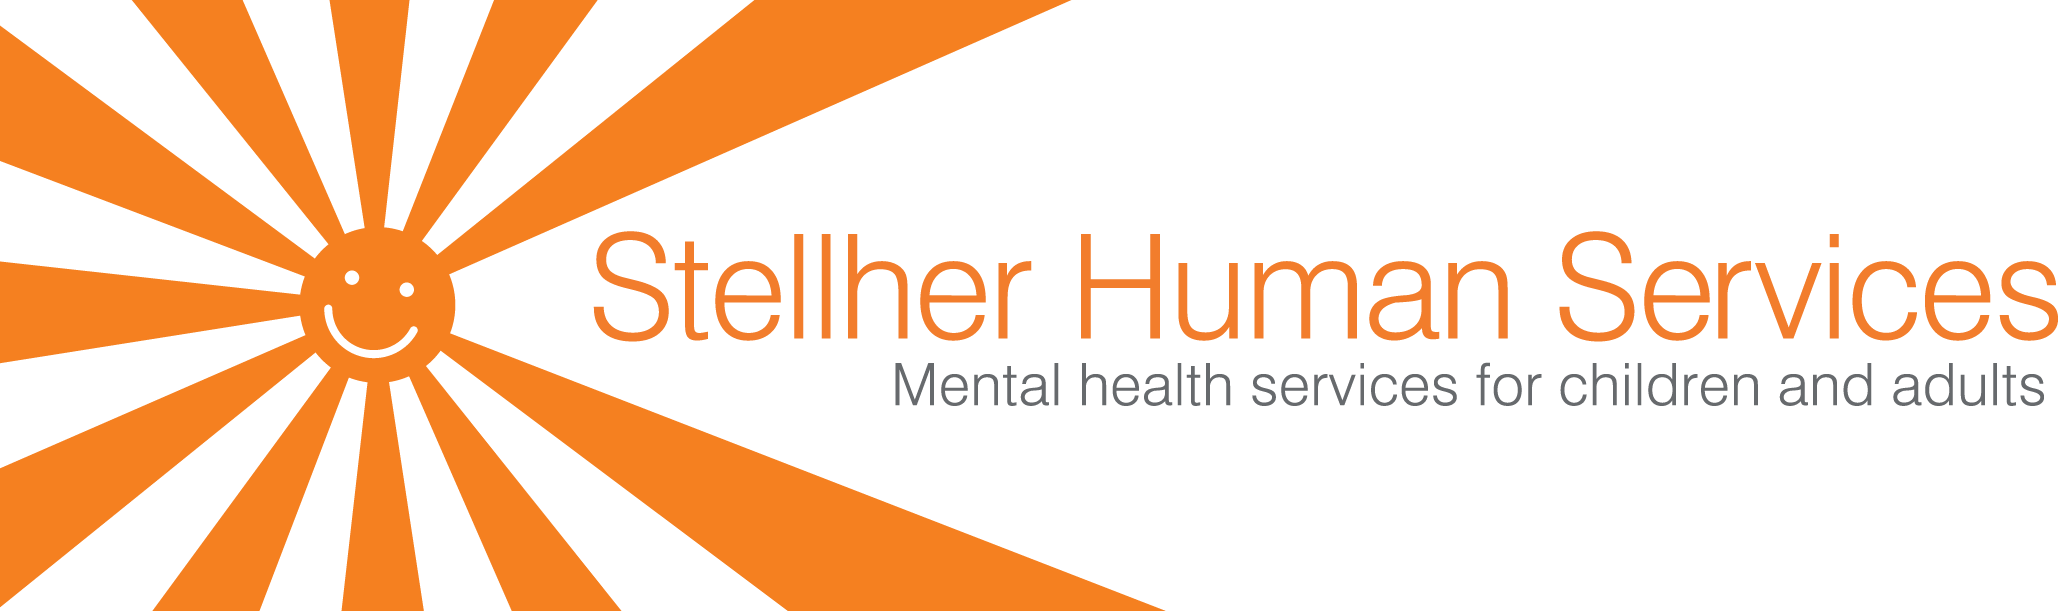 Stellher Human Services - Bemidji